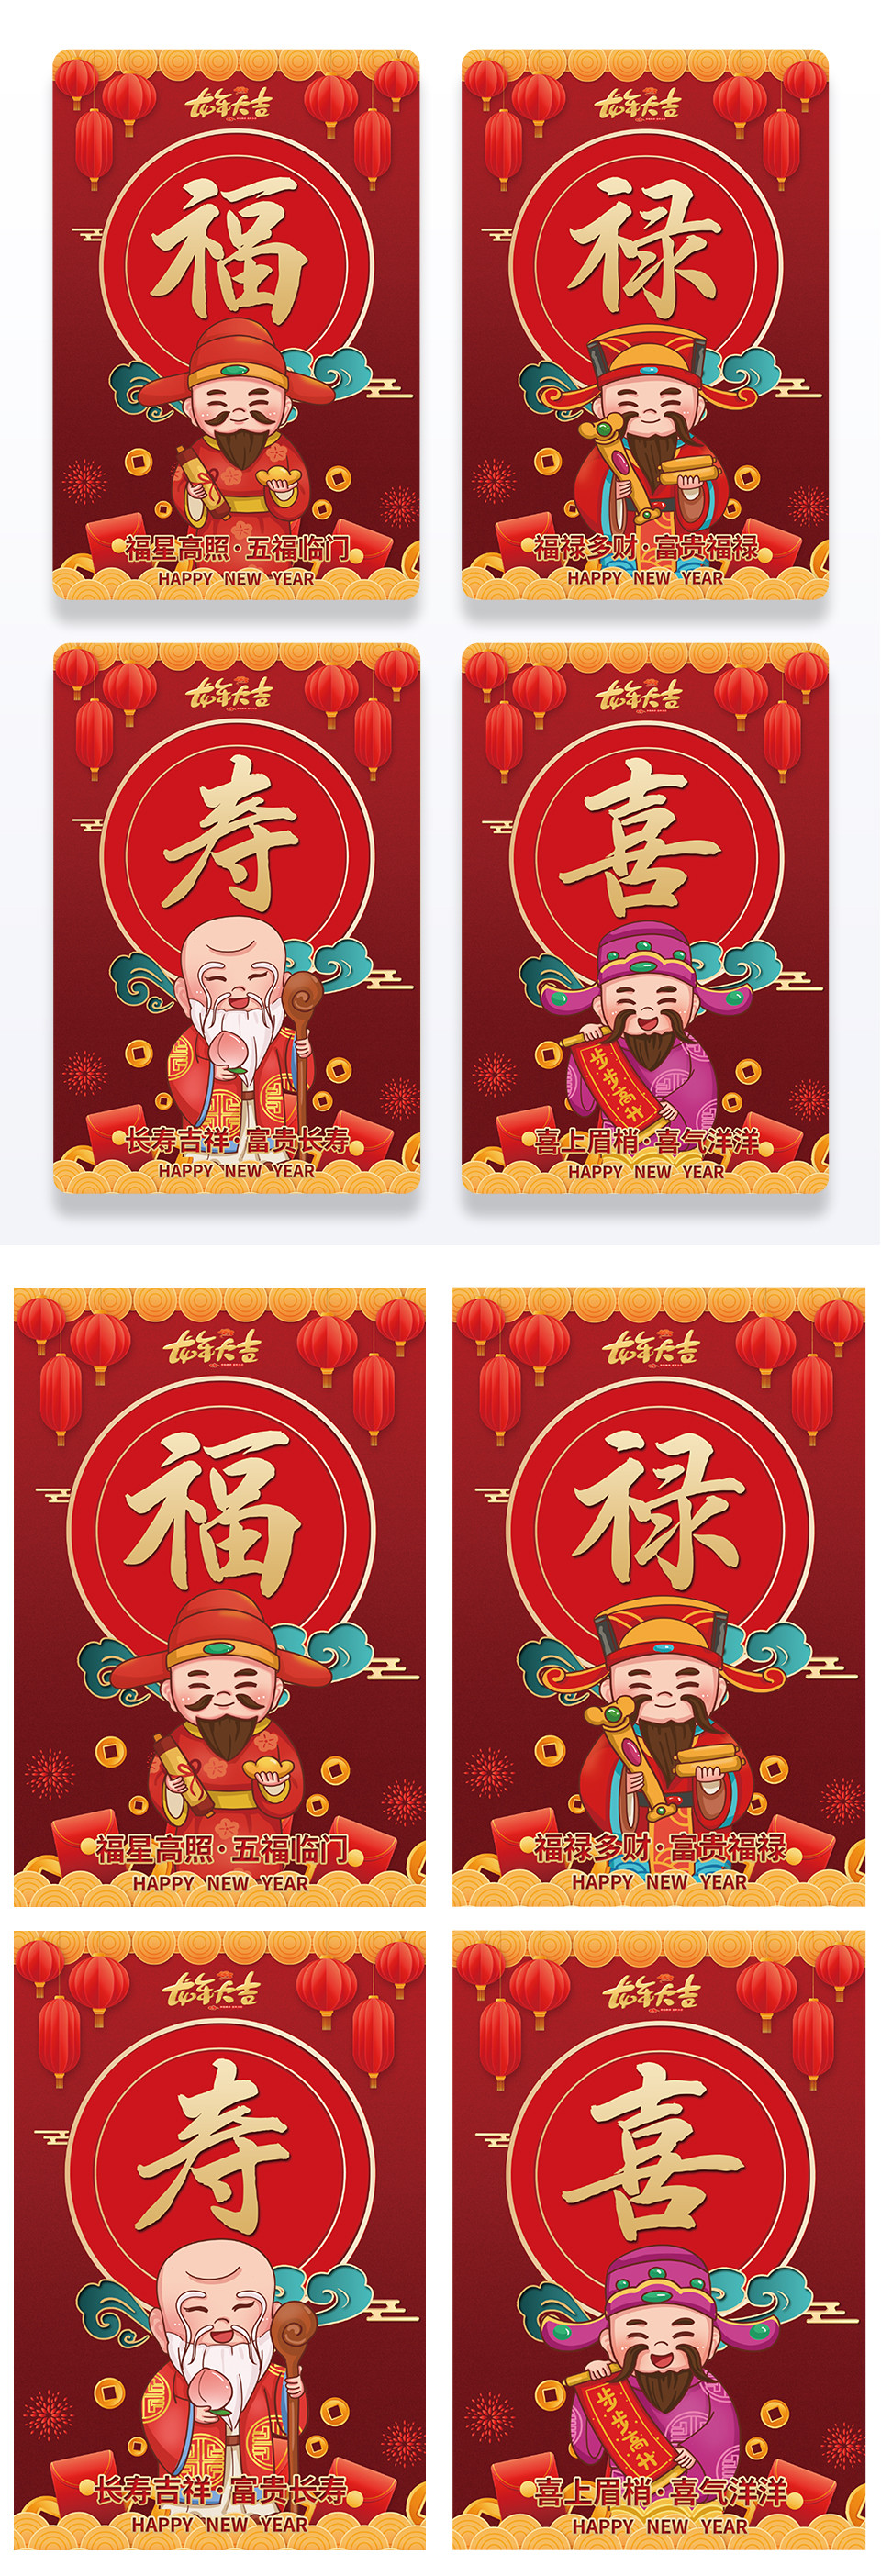 红色喜庆大气福禄寿喜组图海报设计